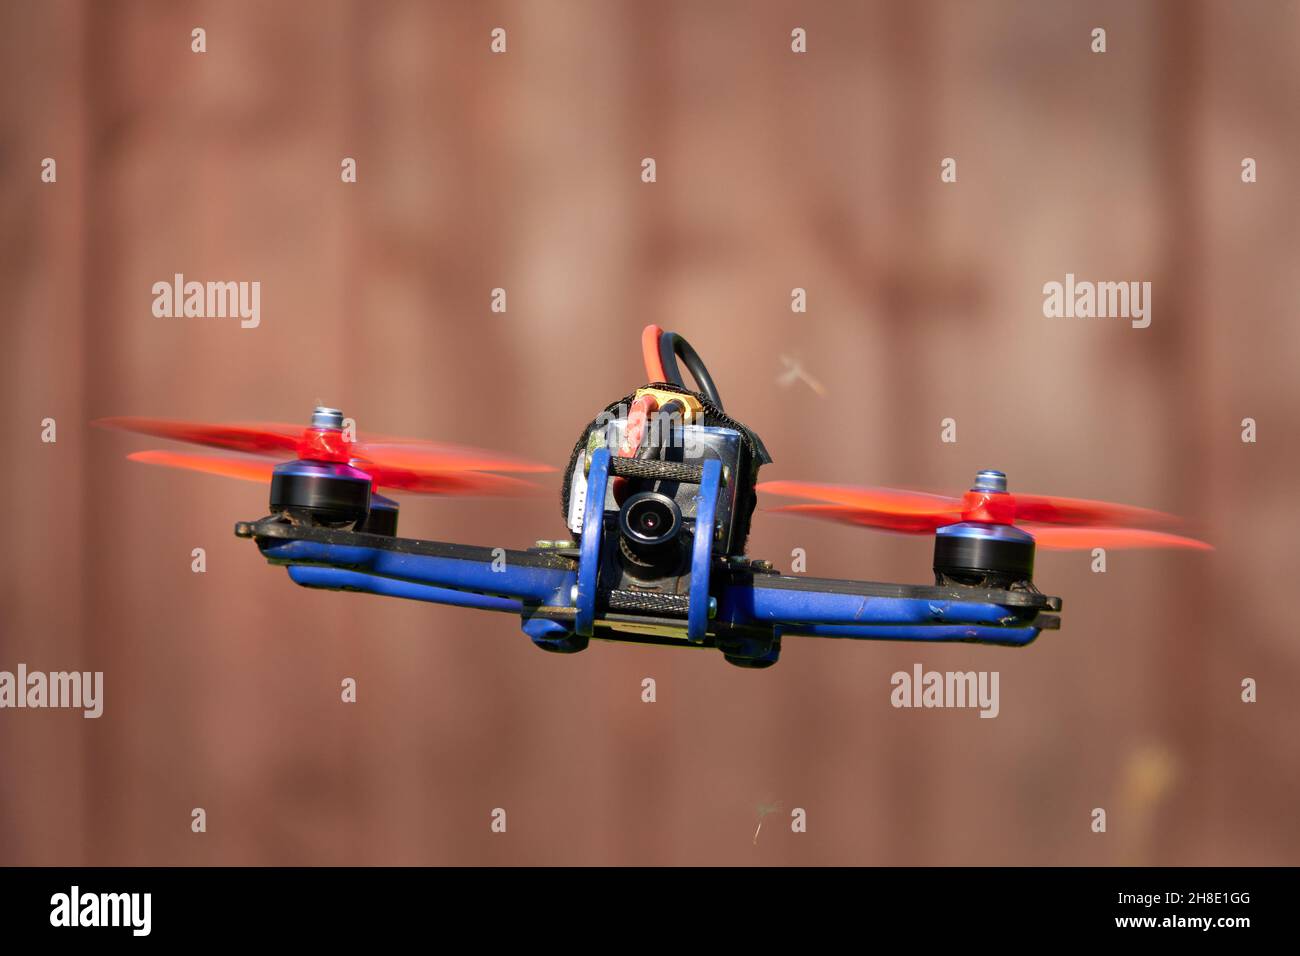 Le drone noir fait également la course de quad, avec hélice orange, se hante devant le mur brun de bois.Allemagne. Banque D'Images